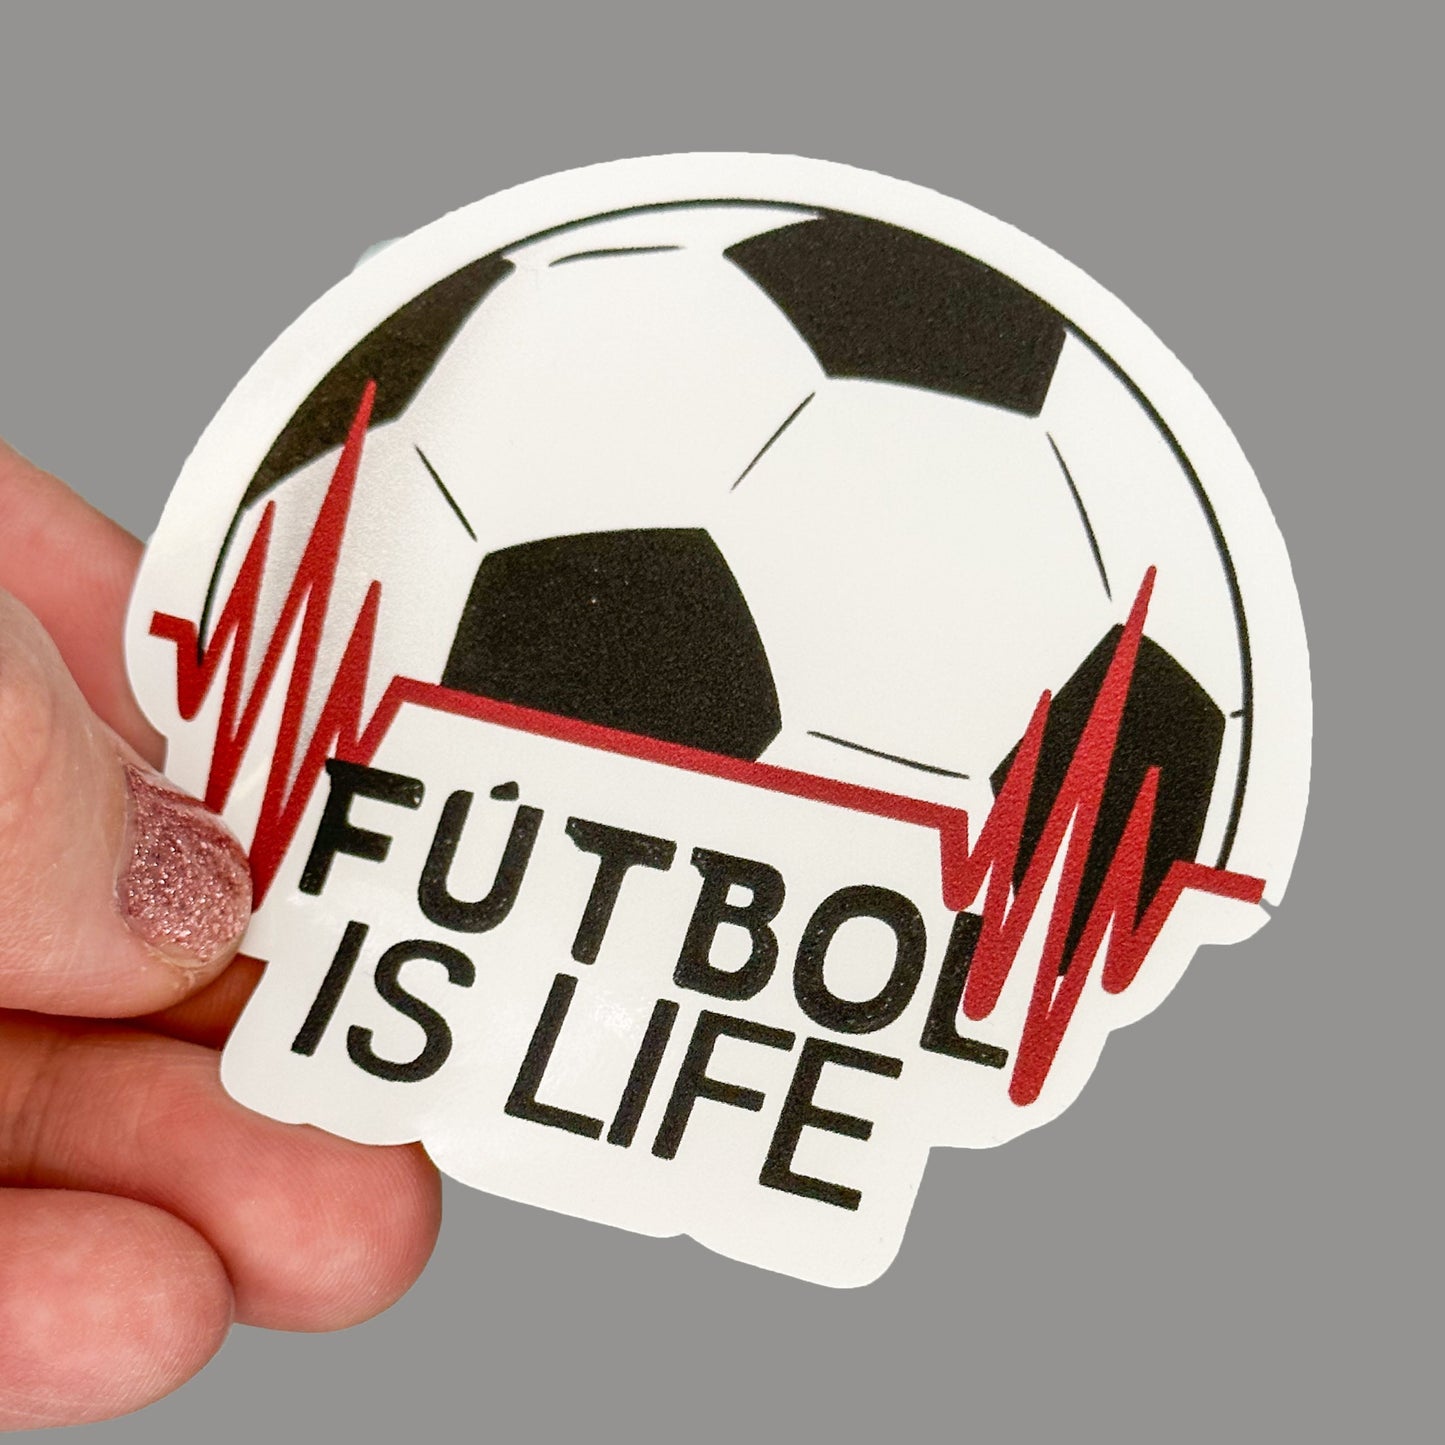 Hales Yeah Design Futbol Sticker ~3" at Longest Edge